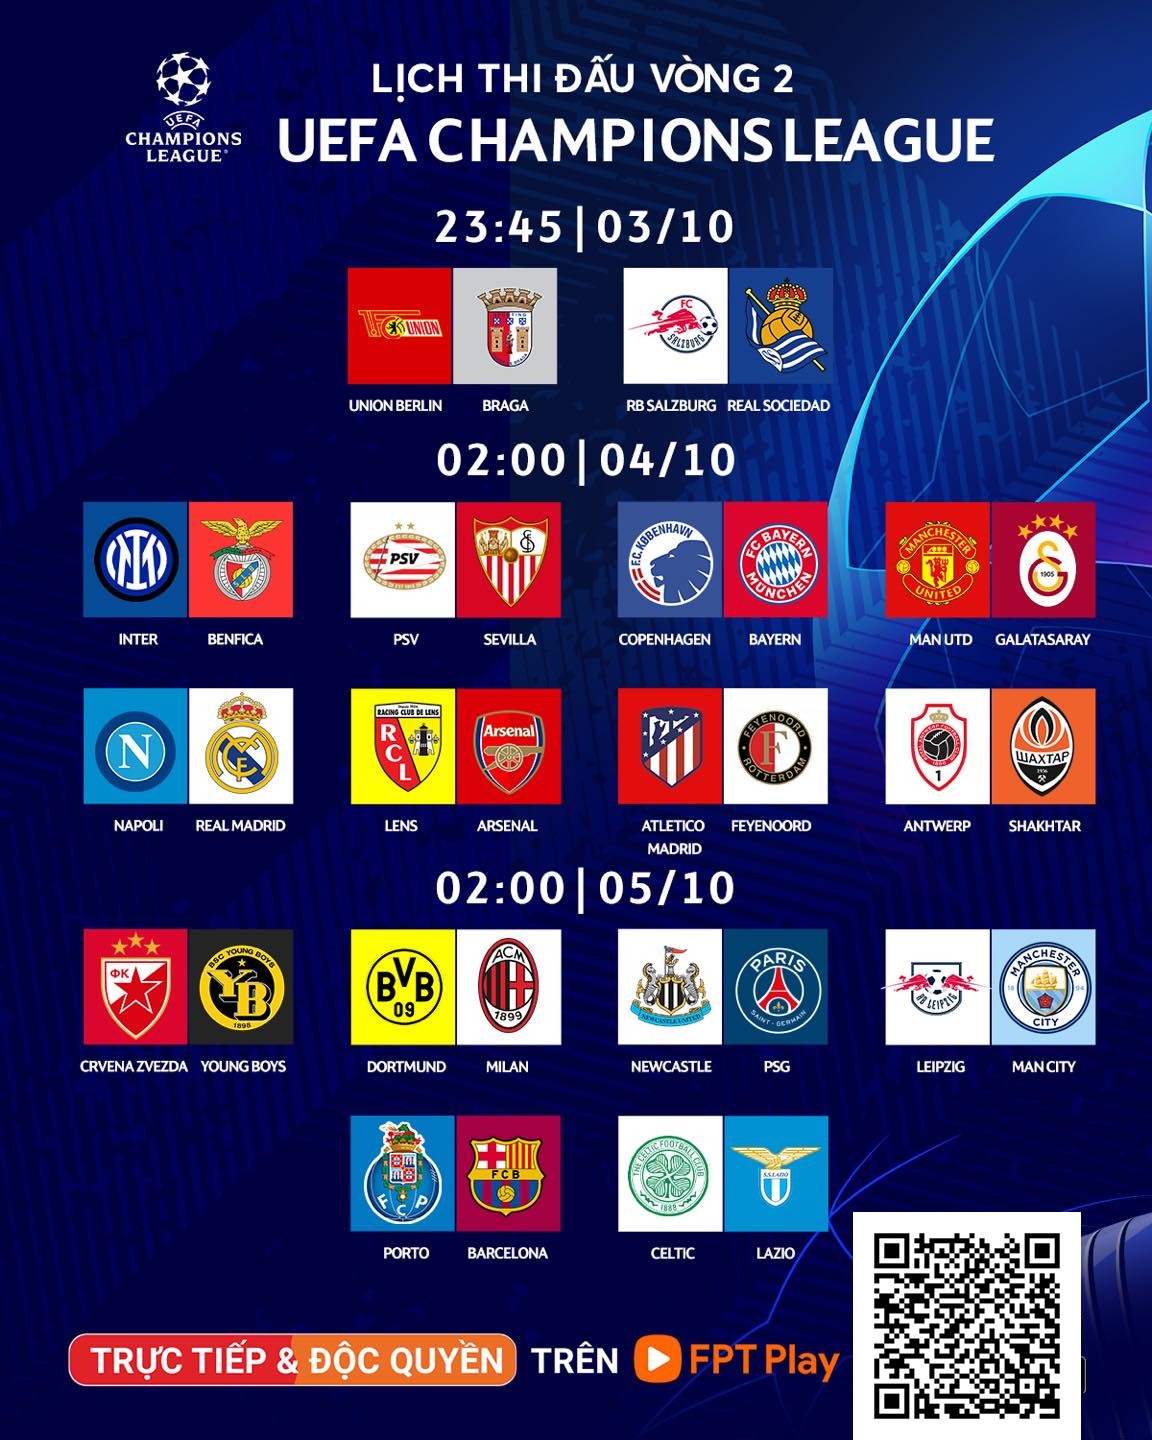 FPT Play - 06-12 tháng Gói iZi, 13 tháng gói MAX/VIP - Tài khoản dịch vụ phổ biến xem truyền hình, thể thao, phim truyện và giải trí, bóng đá trực tiếp và độc quyền UEFA cup C1 C2 C3